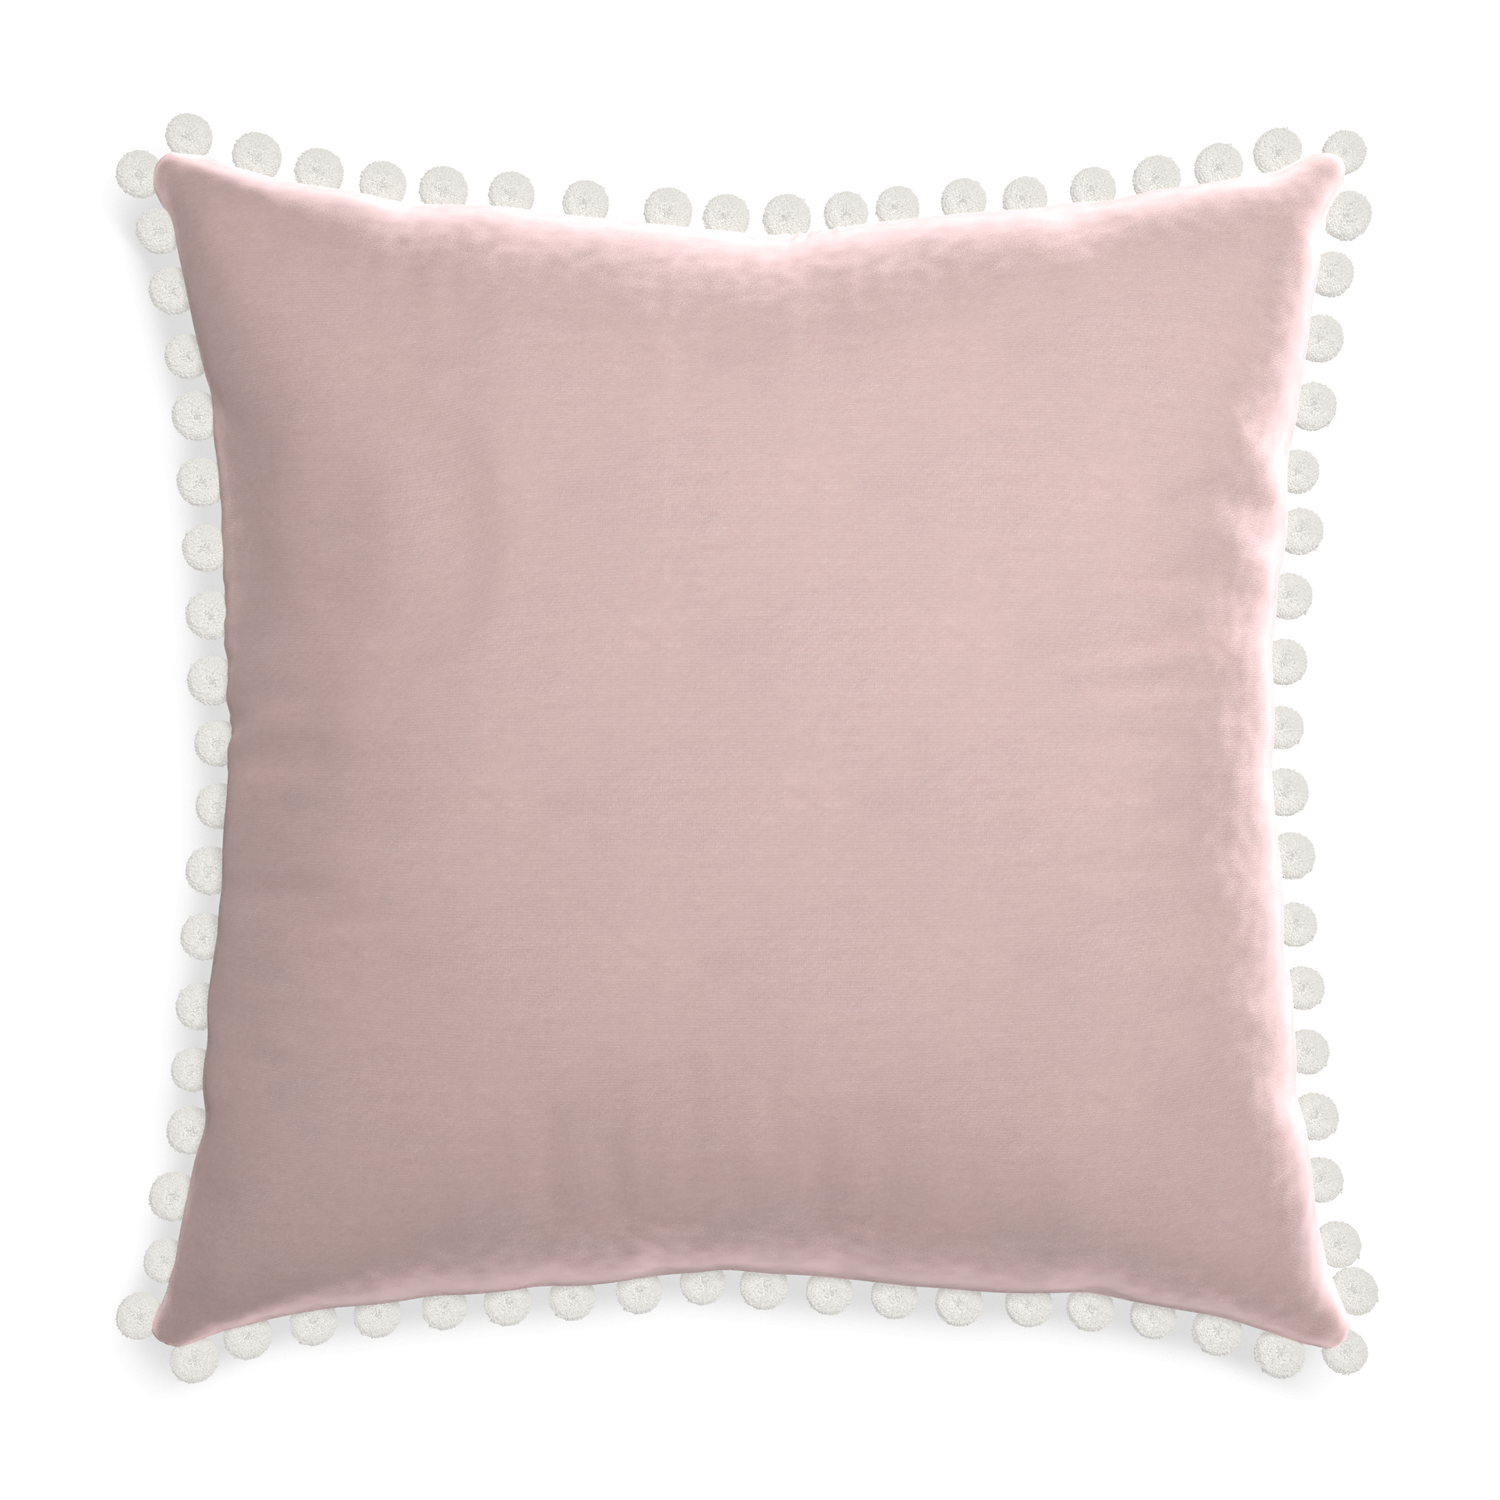 Euro-sham rose velvet custom pillow with snow pom pom on white background